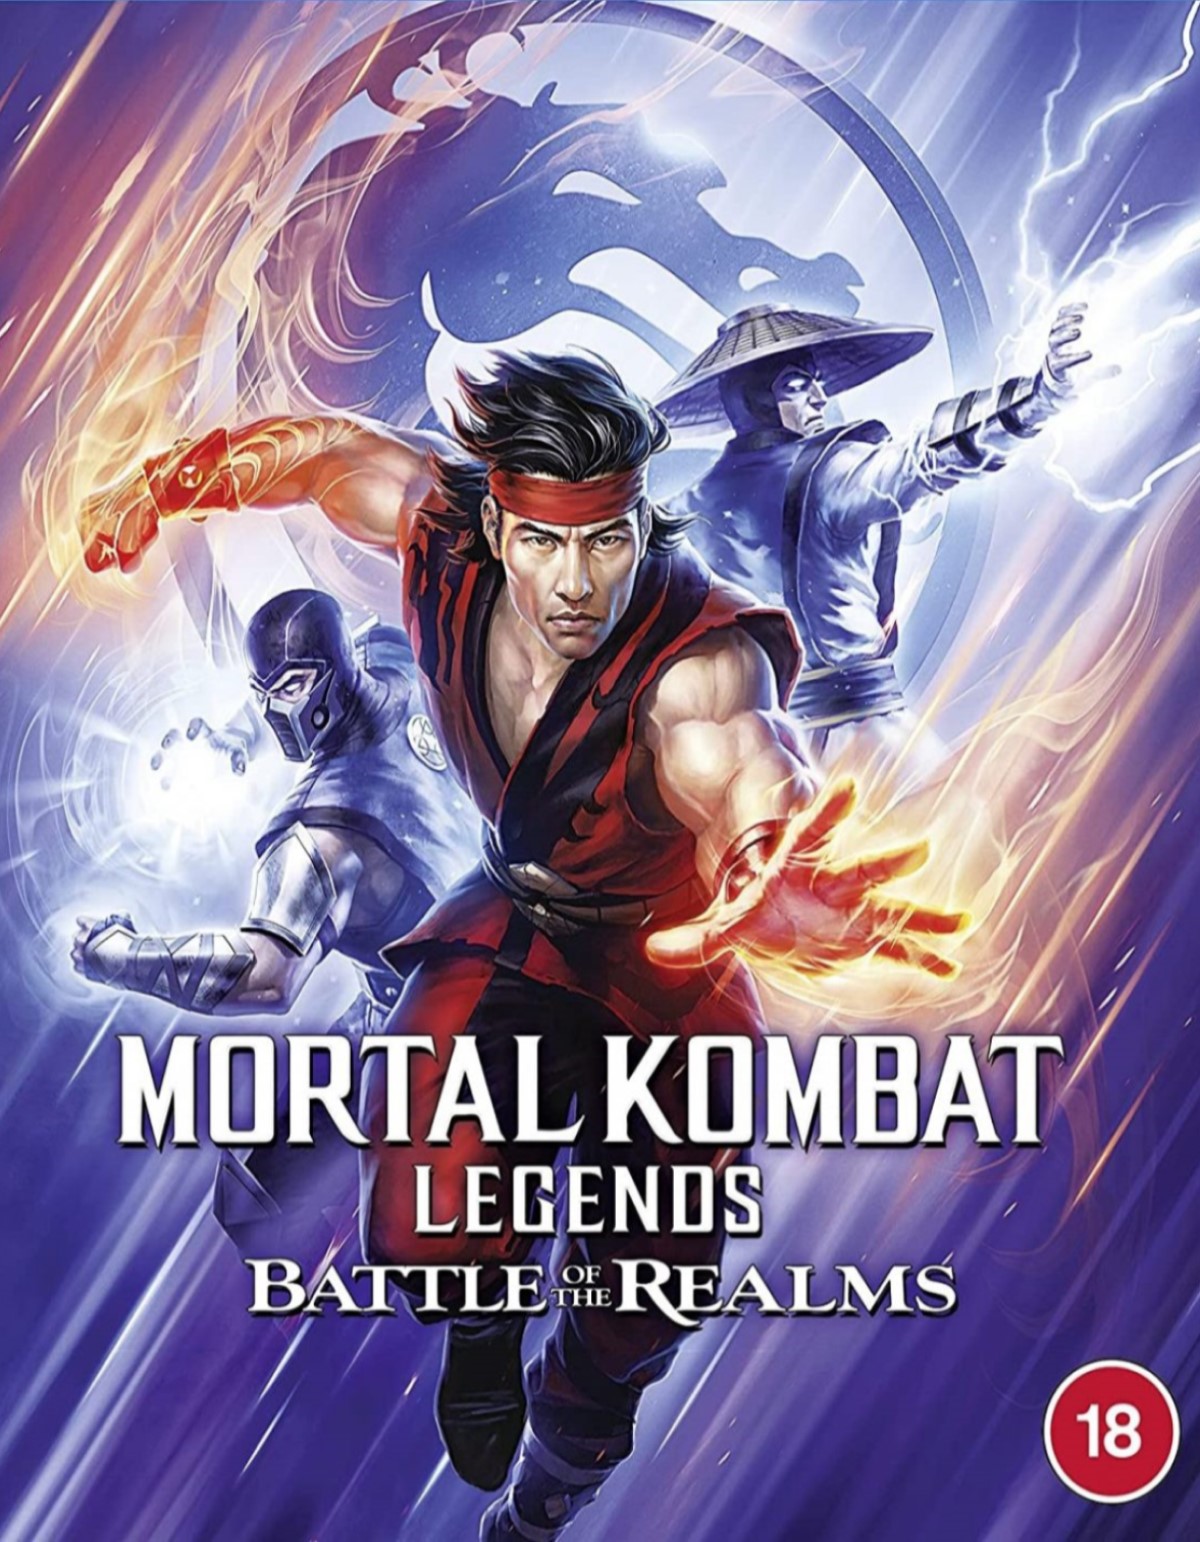 نقد انیمیشن Mortal Kombat Legends Battle of the Realms‌ ‌‌, بررسی و نقد انیمیشن Mortal Kombat Legends Battle of the Realms , انیمیشن Mortal Kombat Legends Battle of the Realms , بررسی و نقد انیمیشین نبرد امپراطوری ها , نقد انیمیشین نبرد امپراطوری ها ,